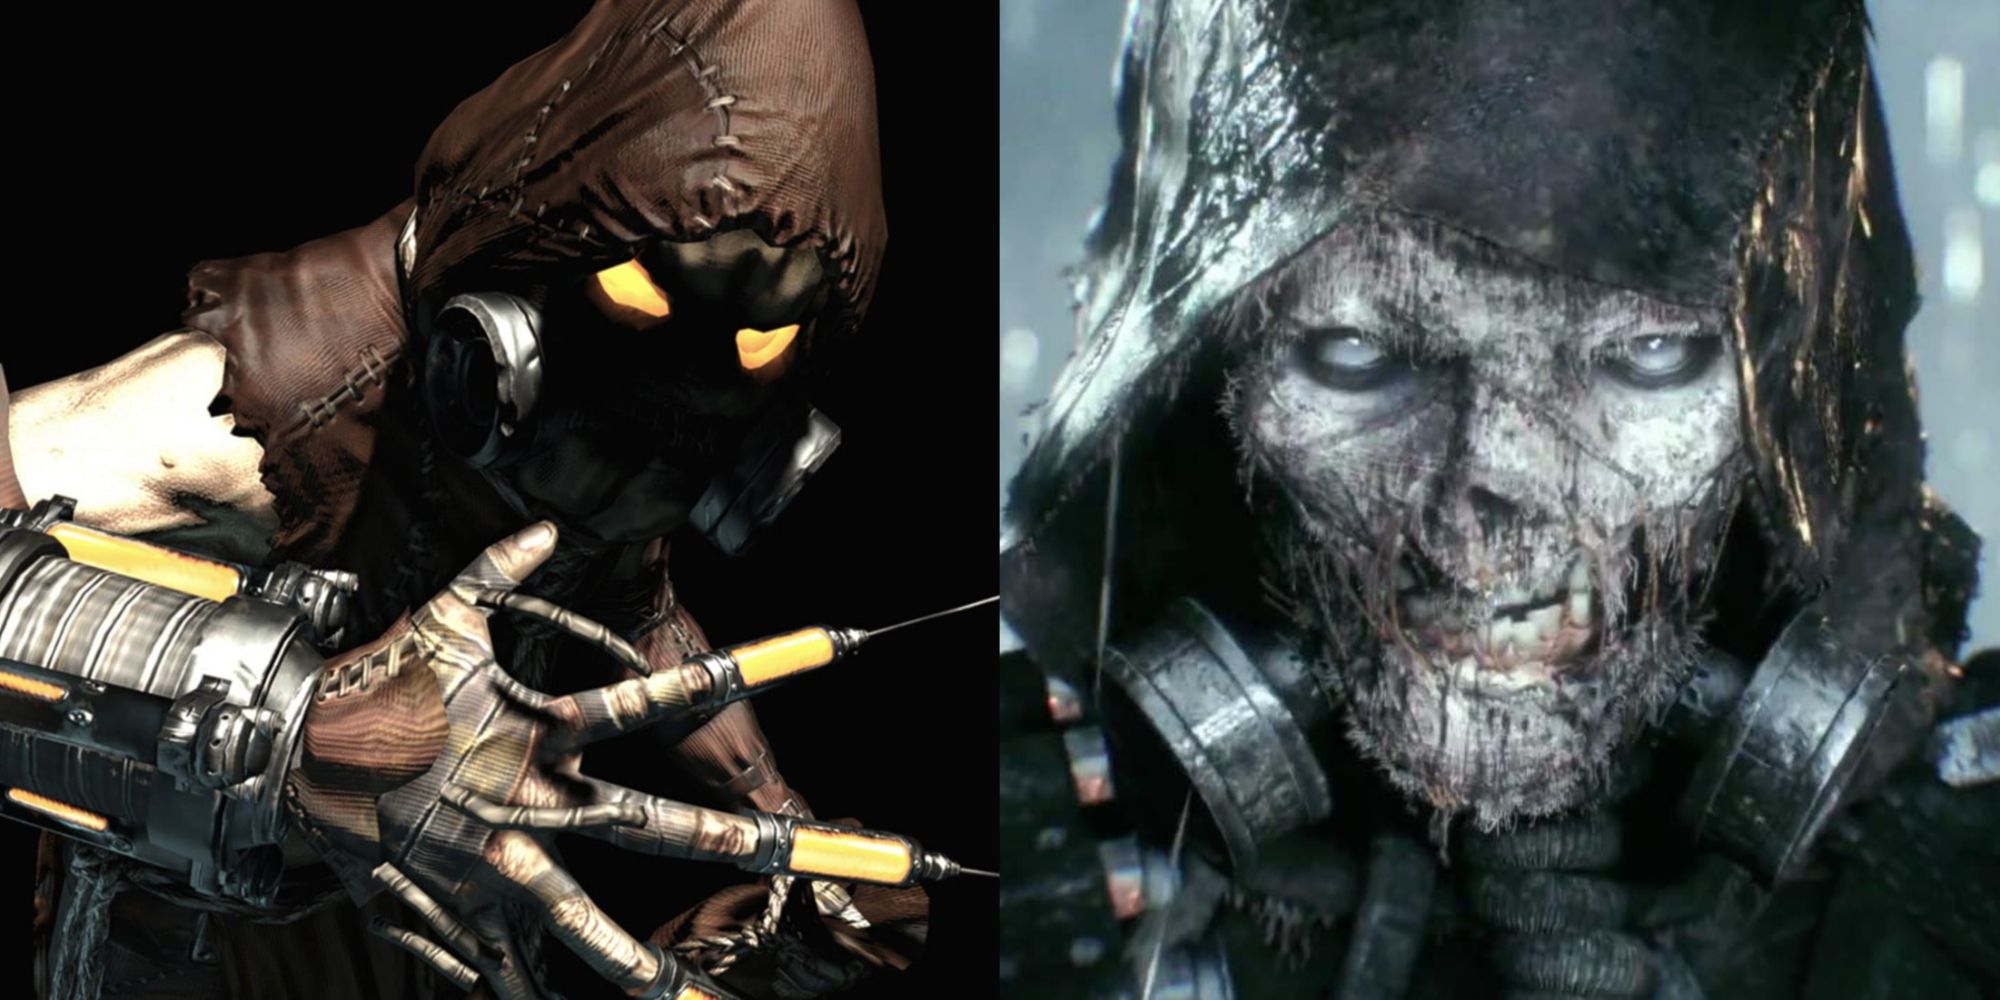 Imagem dividida do Espantalho em Batman Arkham Asylum e Arkham Knight